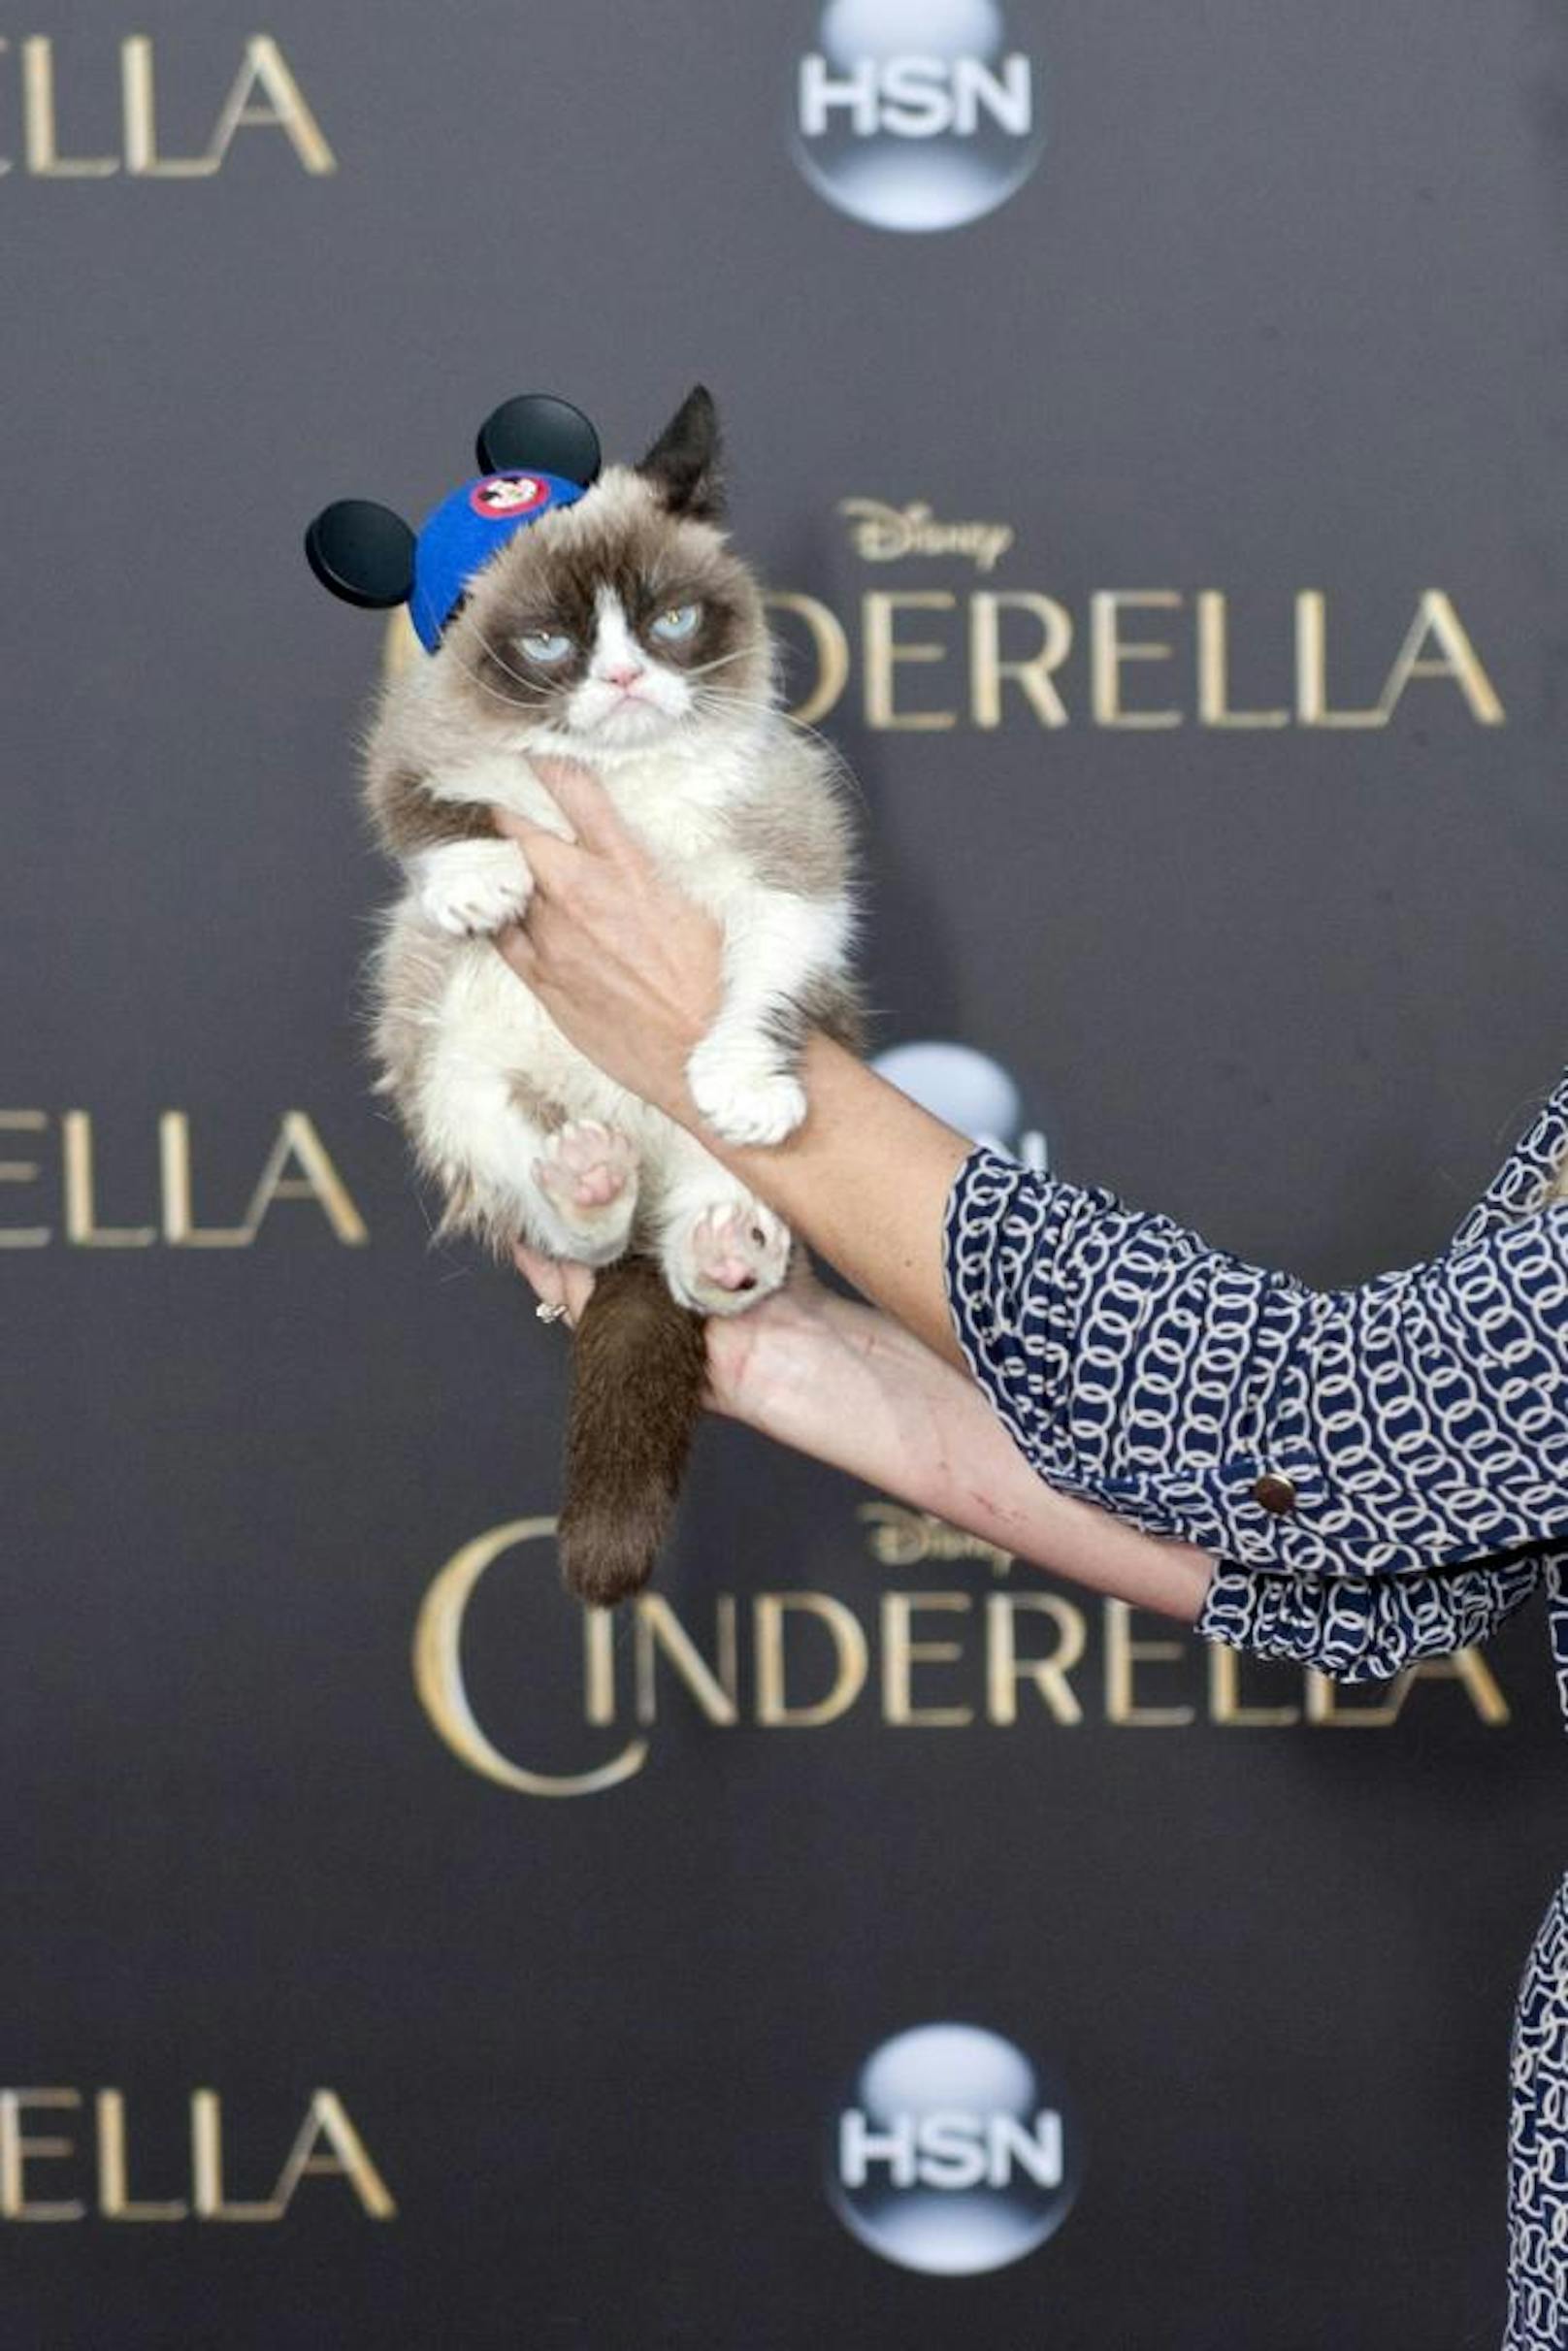 Grumpy Cat gewann einen Preis für das Meme des Jahres bei den Webby Awards 2013. Hier ist der flauschige Vierbeiner bei der Premiere des Kinofilms Cinderella in Hollywood zu sehen.